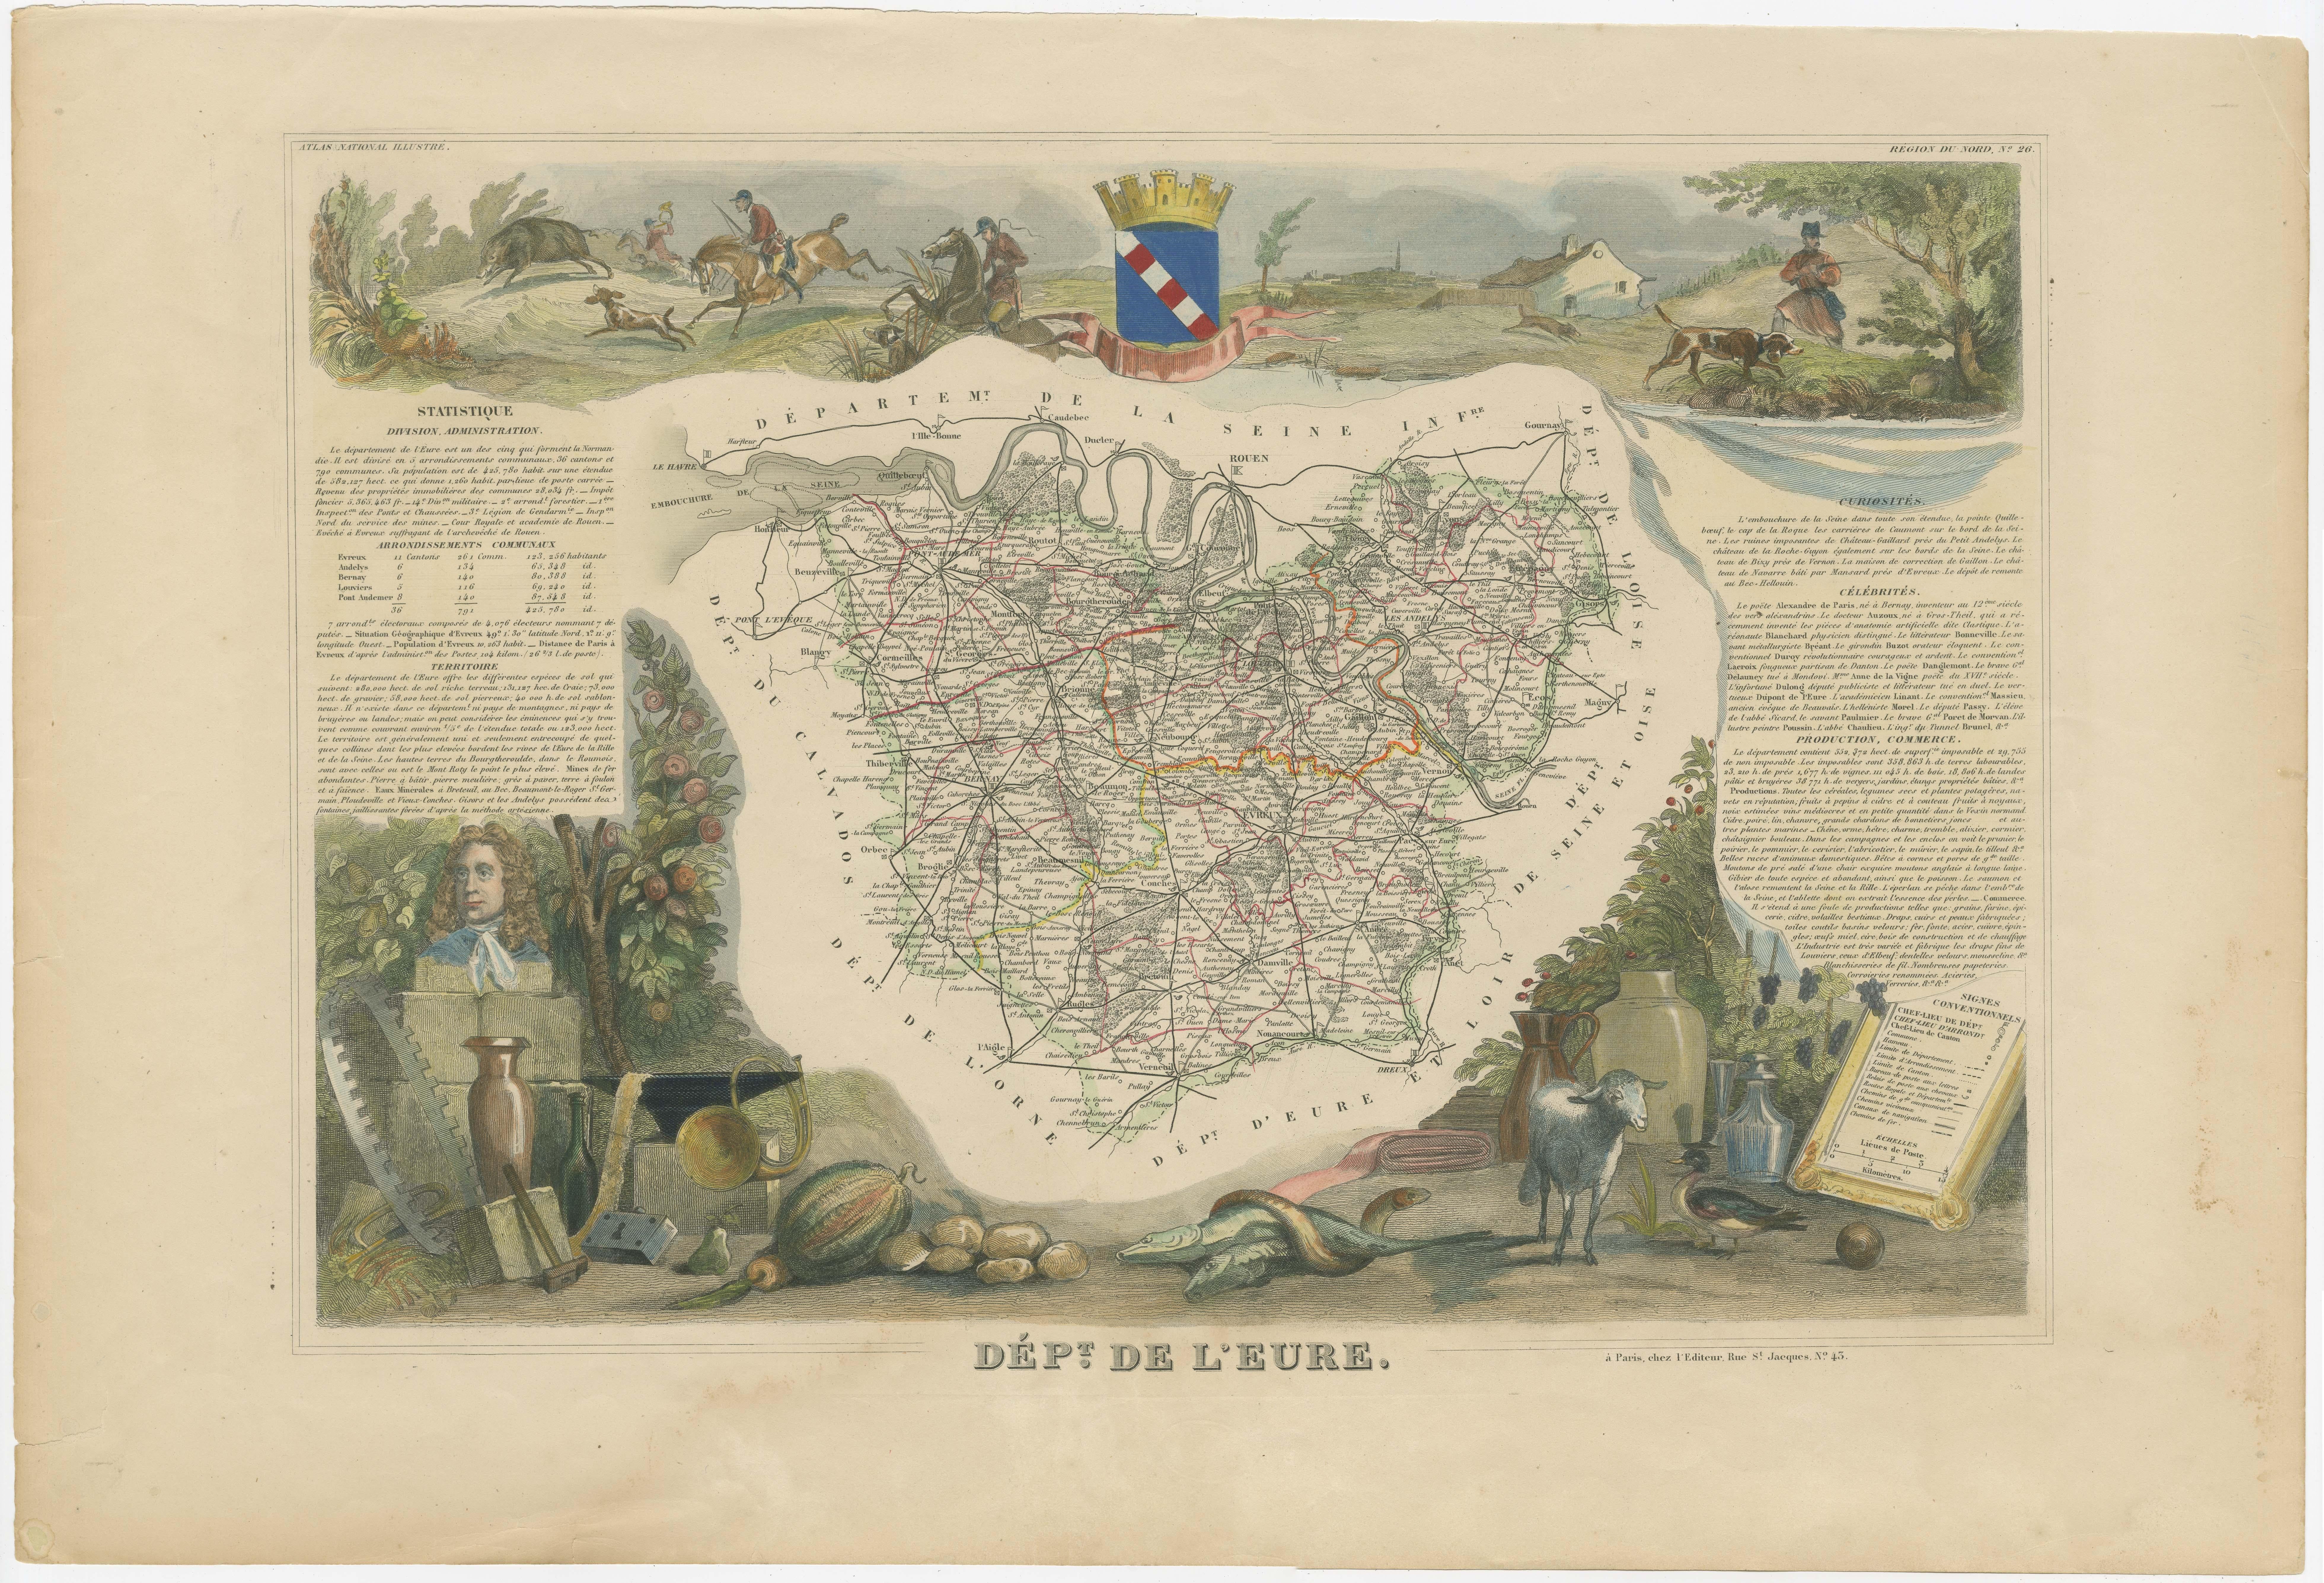 Antike Karte mit dem Titel 'Dépt. de l'Eure'. Karte des französischen Departements Eure, Frankreich. In dieser Region Frankreichs befindet sich Giverny, wo das Haus und der Garten des Impressionisten Claude Monet zu sehen sind. Das Ganze ist von